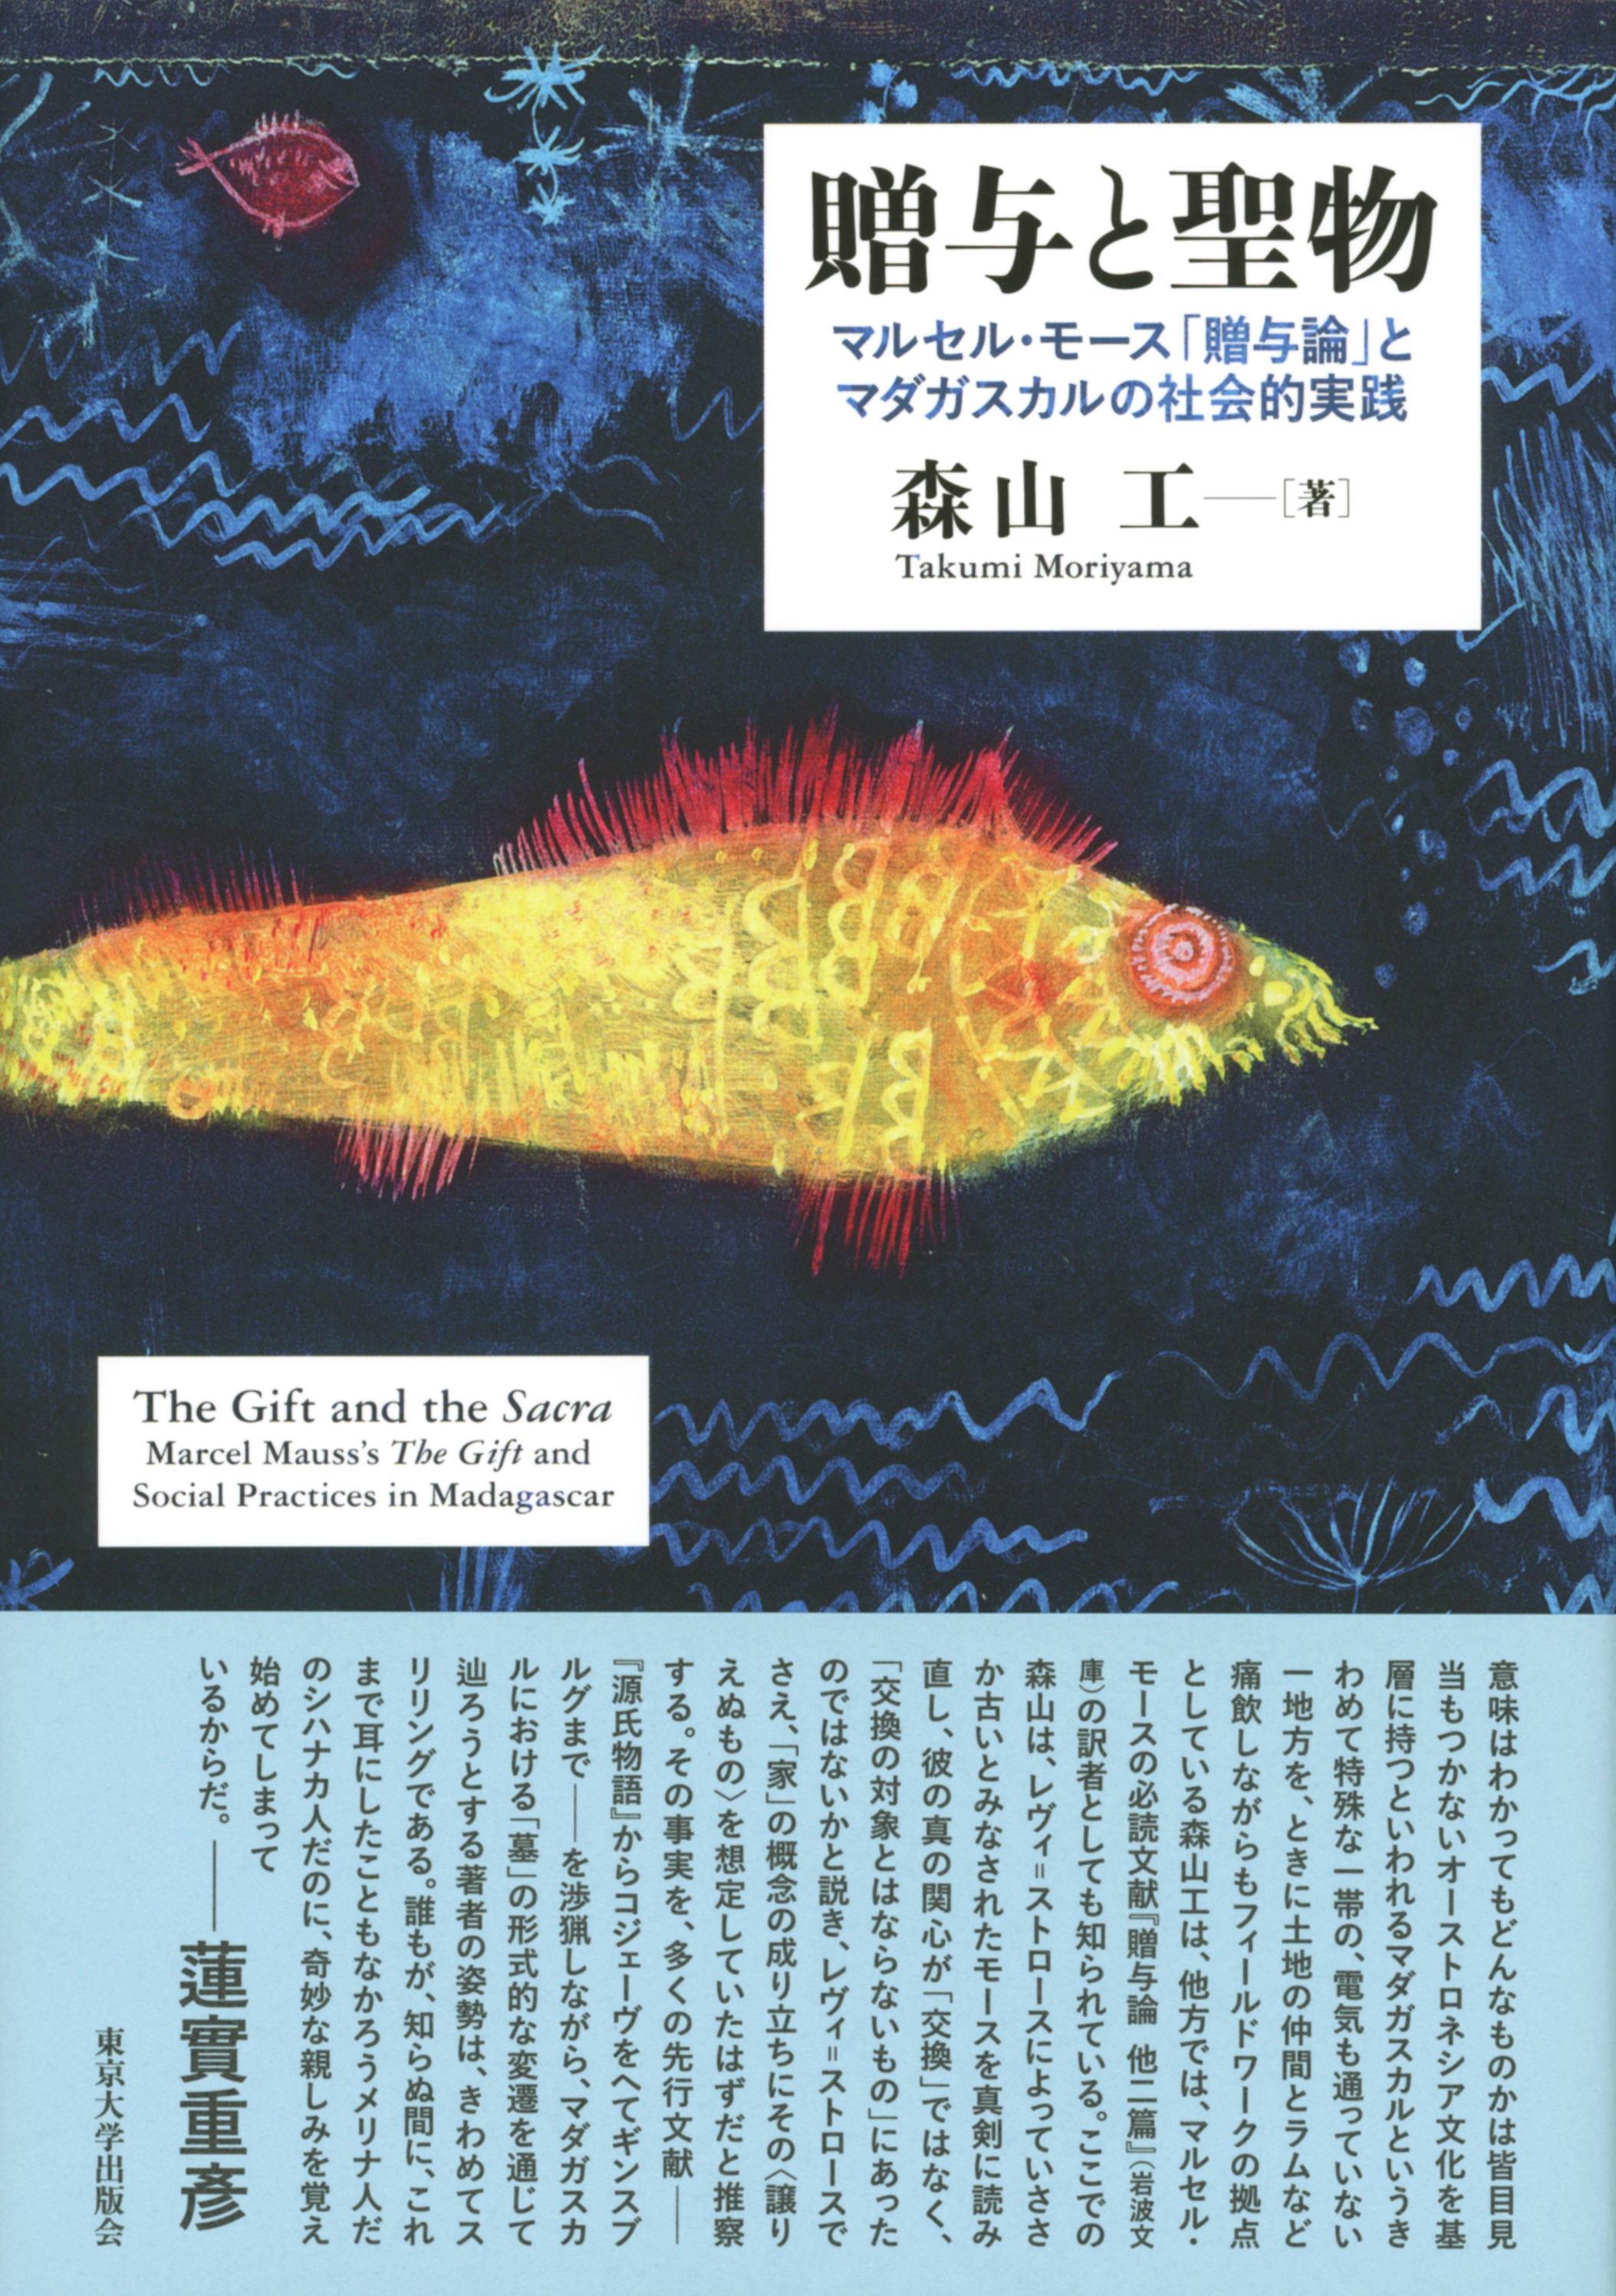 パウル・クレーの作品、黄金の魚